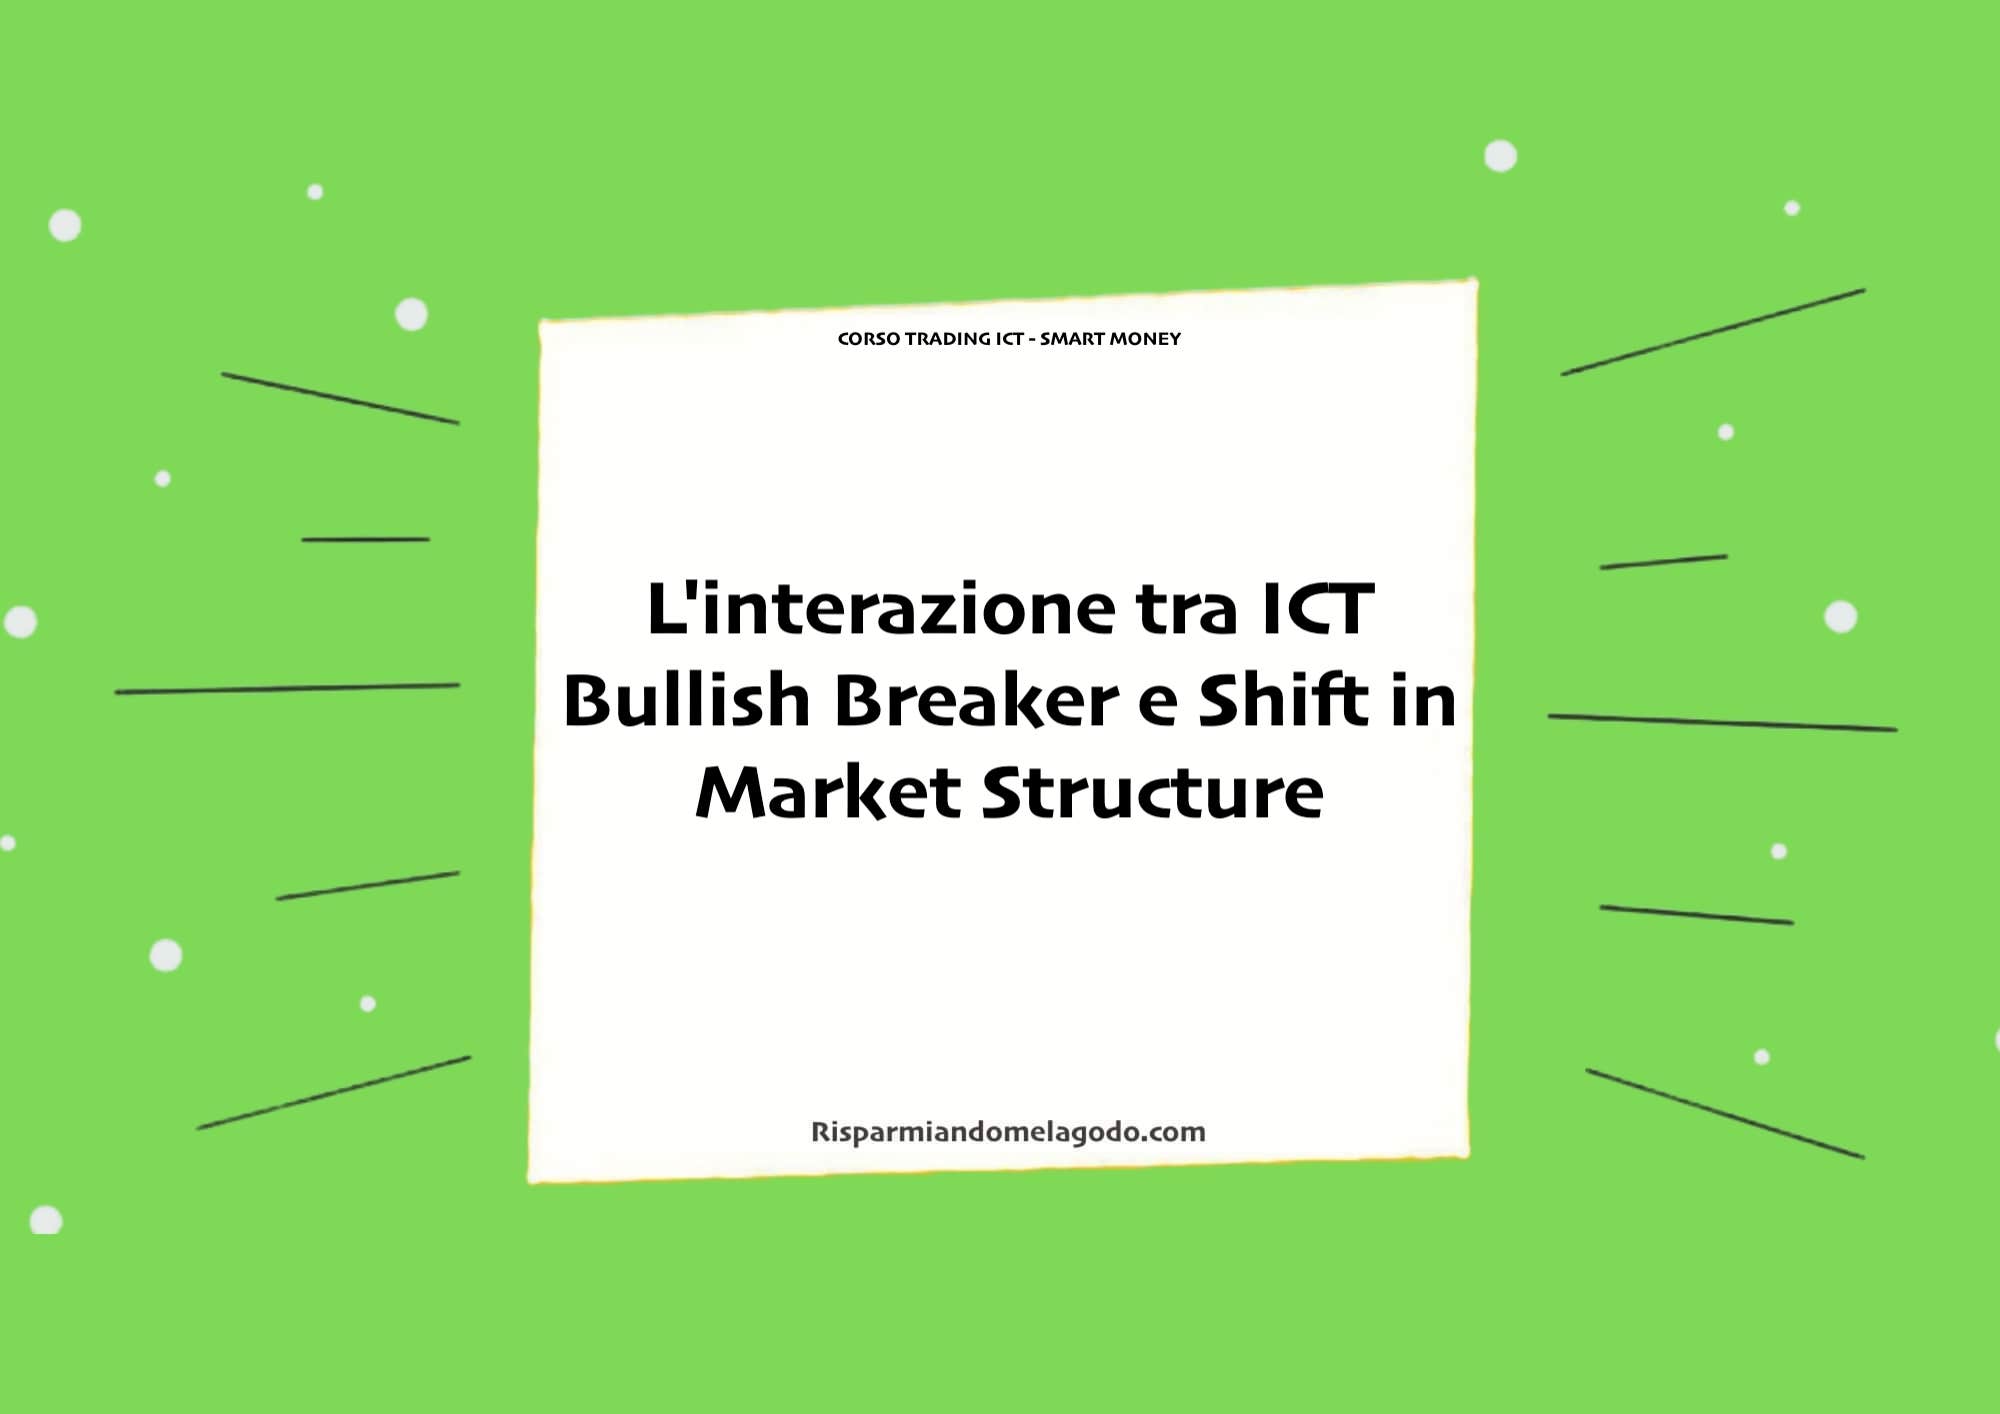 L'interazione tra ICT Bullish Breaker e Shift in Market Structure